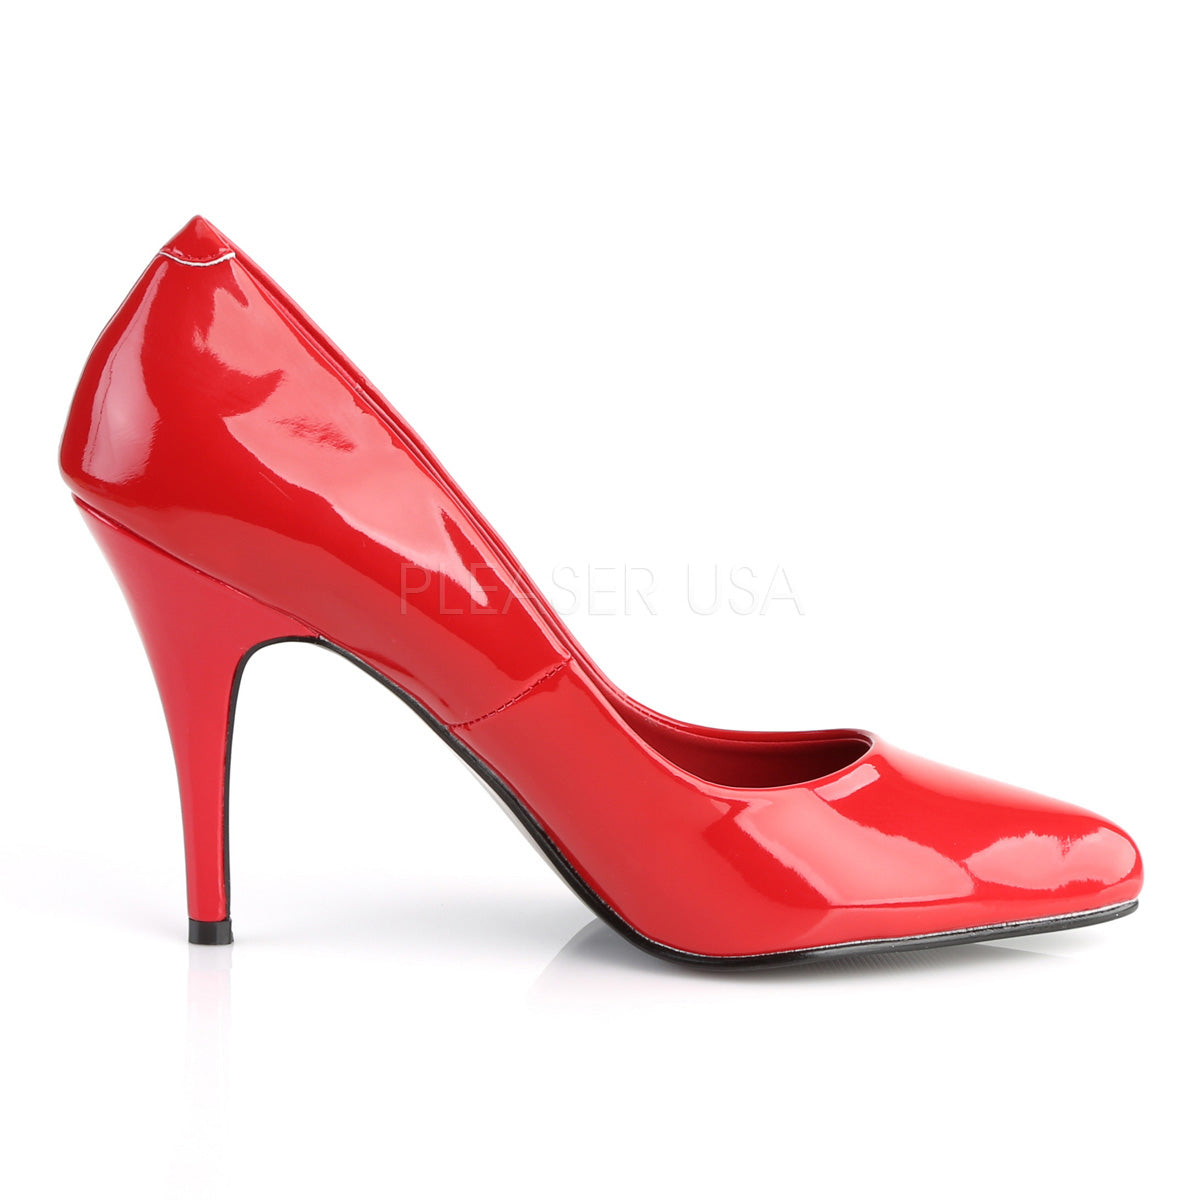 4 Inch Heel VANITY-420 Red Patent